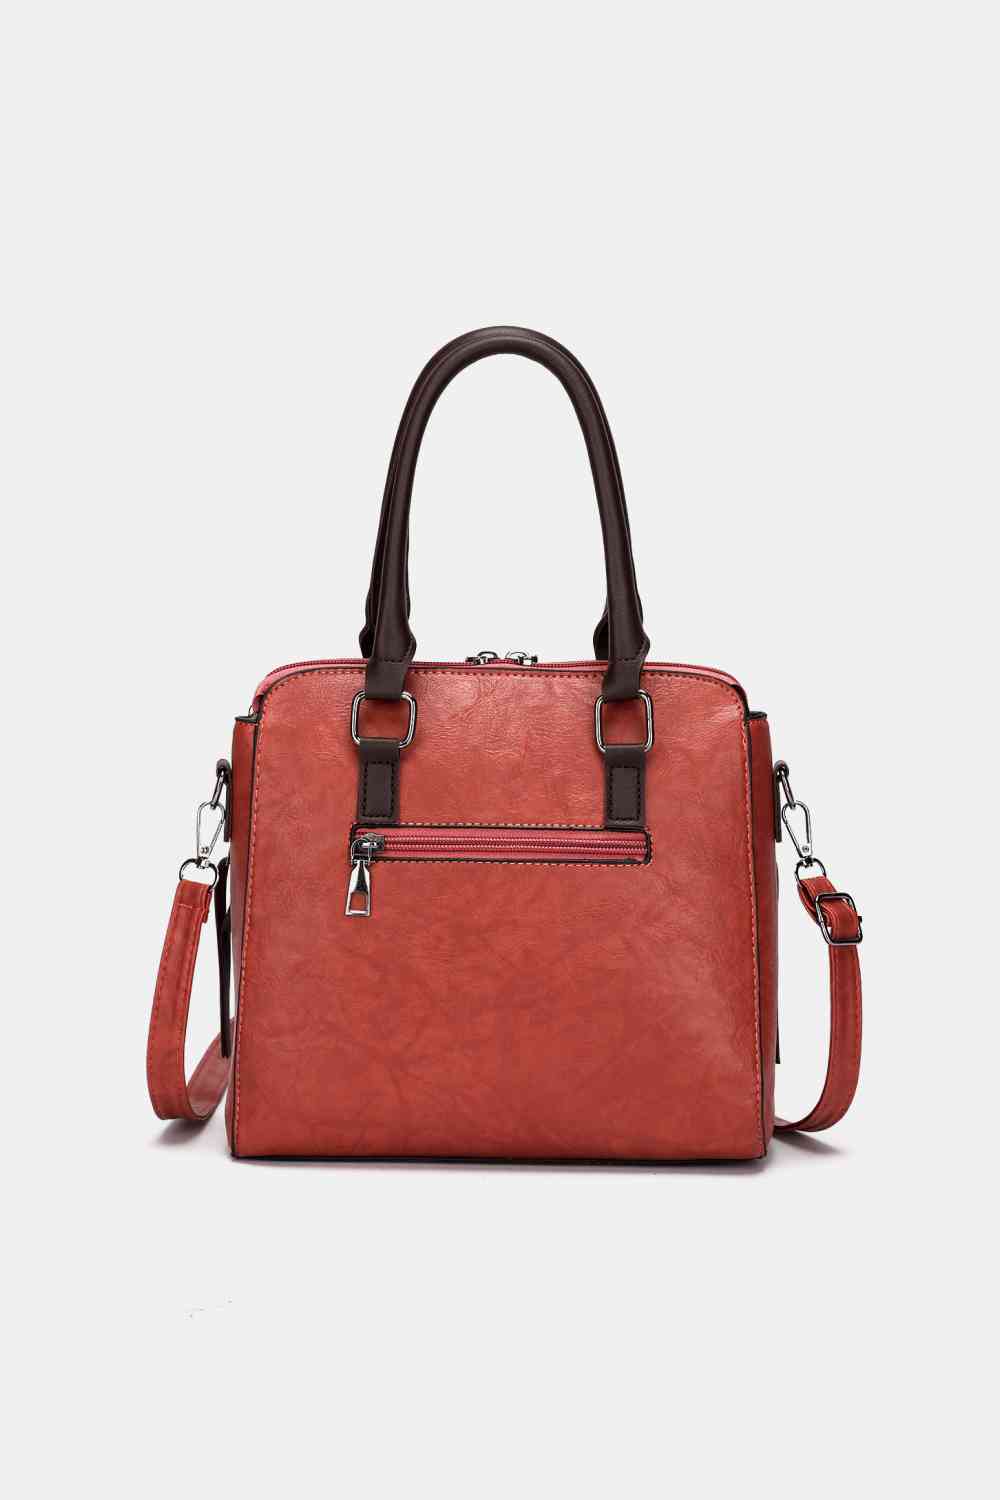 4-Piece Faux Leather Handbag Set